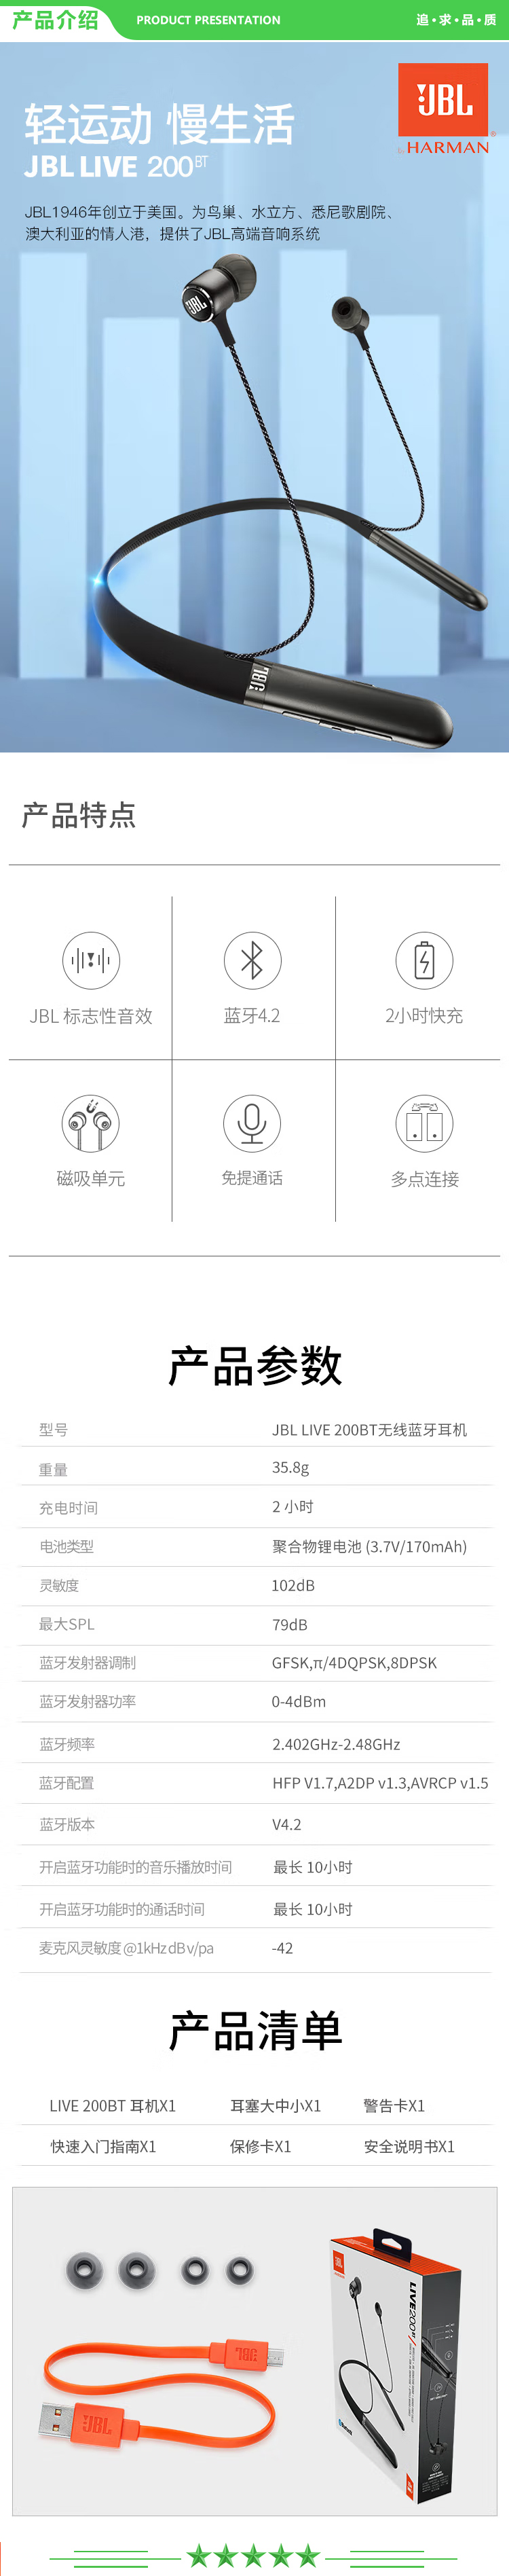 JBL LIVE 200BT 颈挂式无线蓝牙耳机 入耳式耳机+运动耳机 跑步磁吸式带麦 苹果安卓通用 晶石绿 .jpg